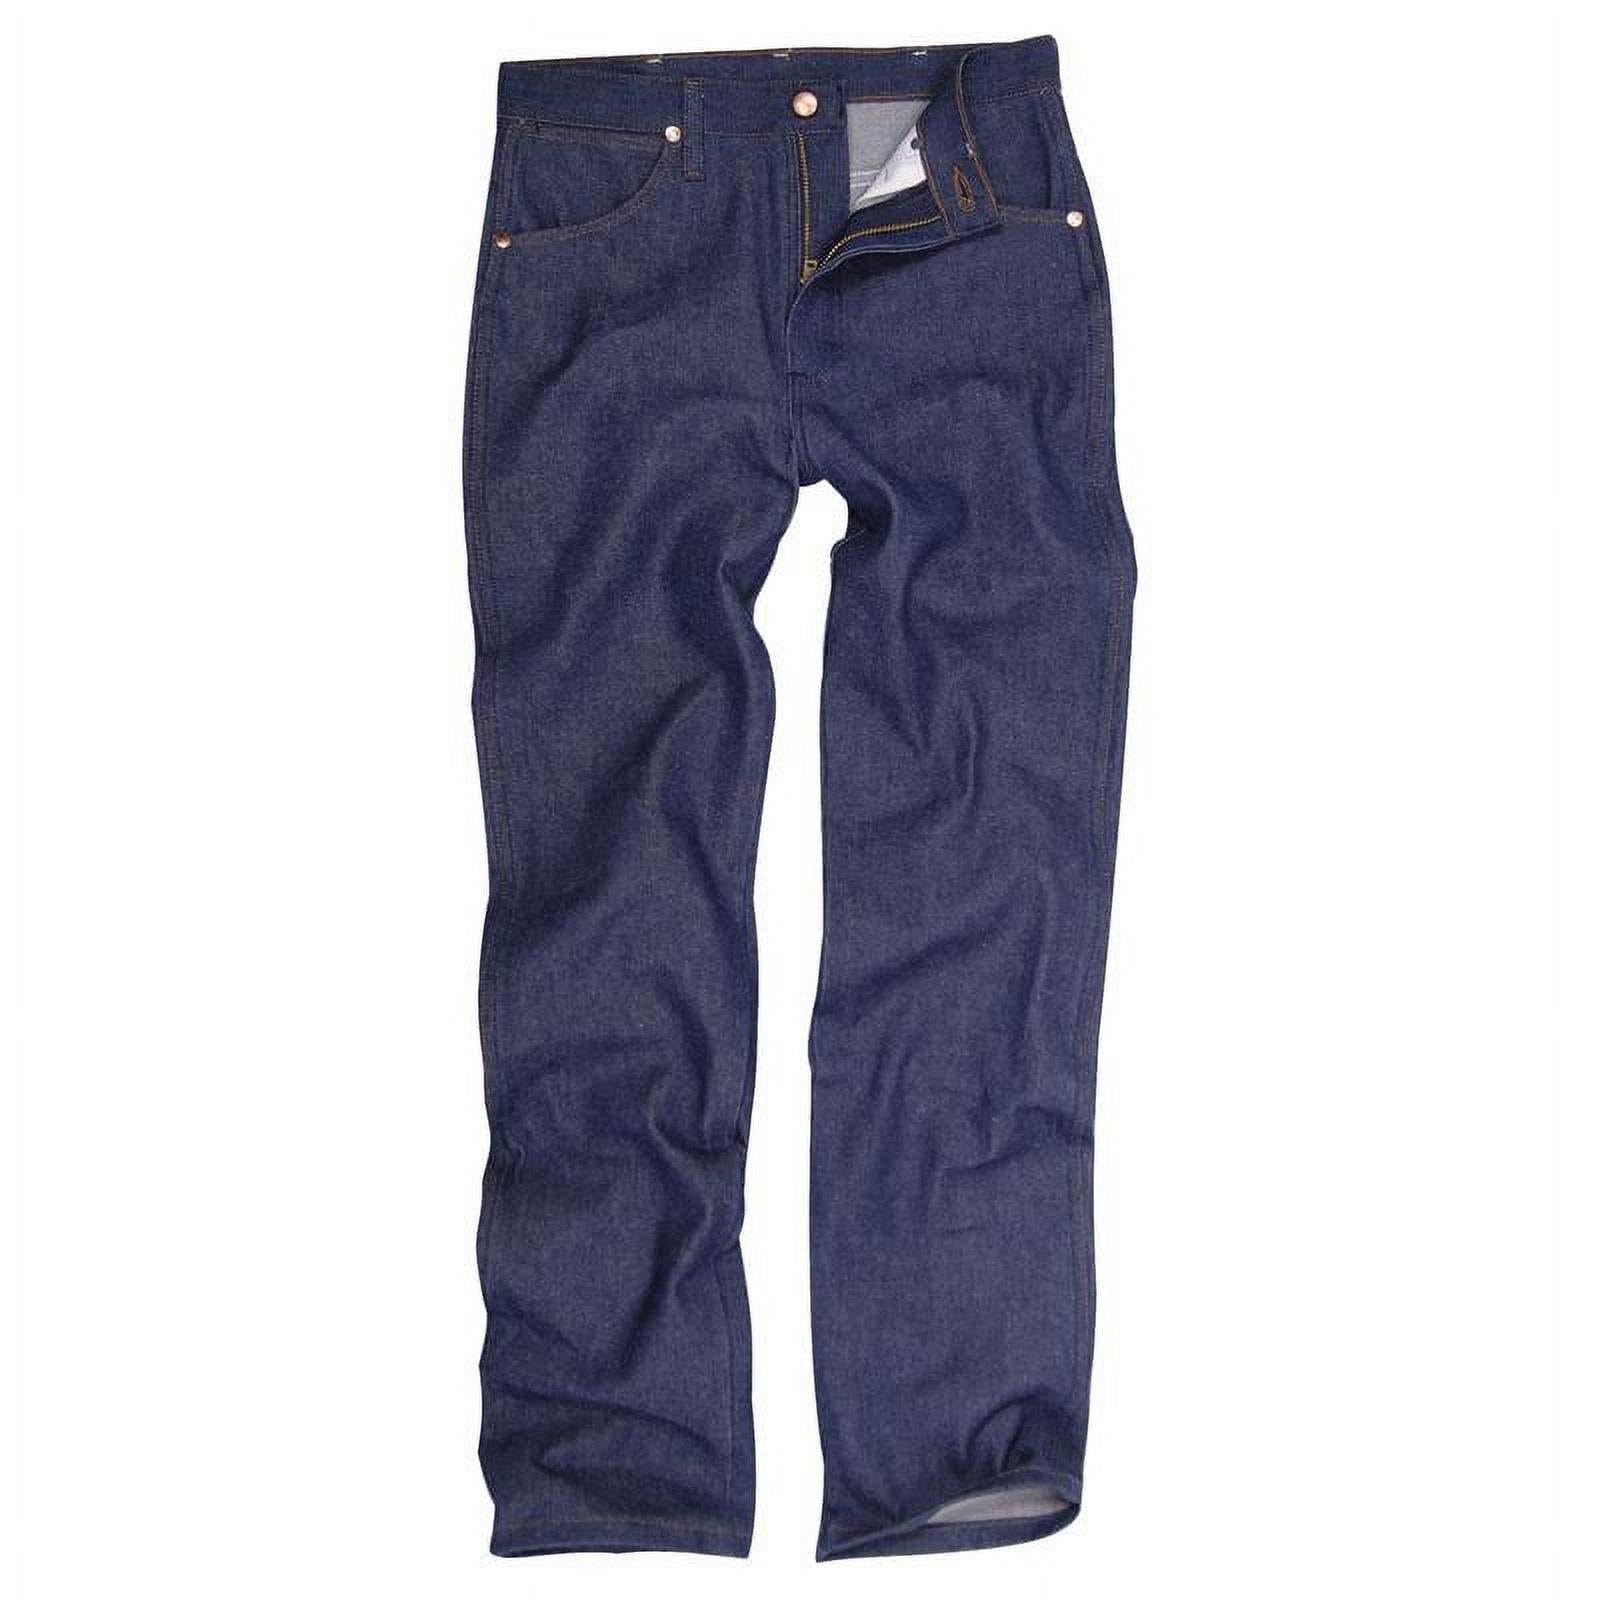 936DEN Wrangler Slim Fit Cowboy Cut Jeans - image 1 of 3